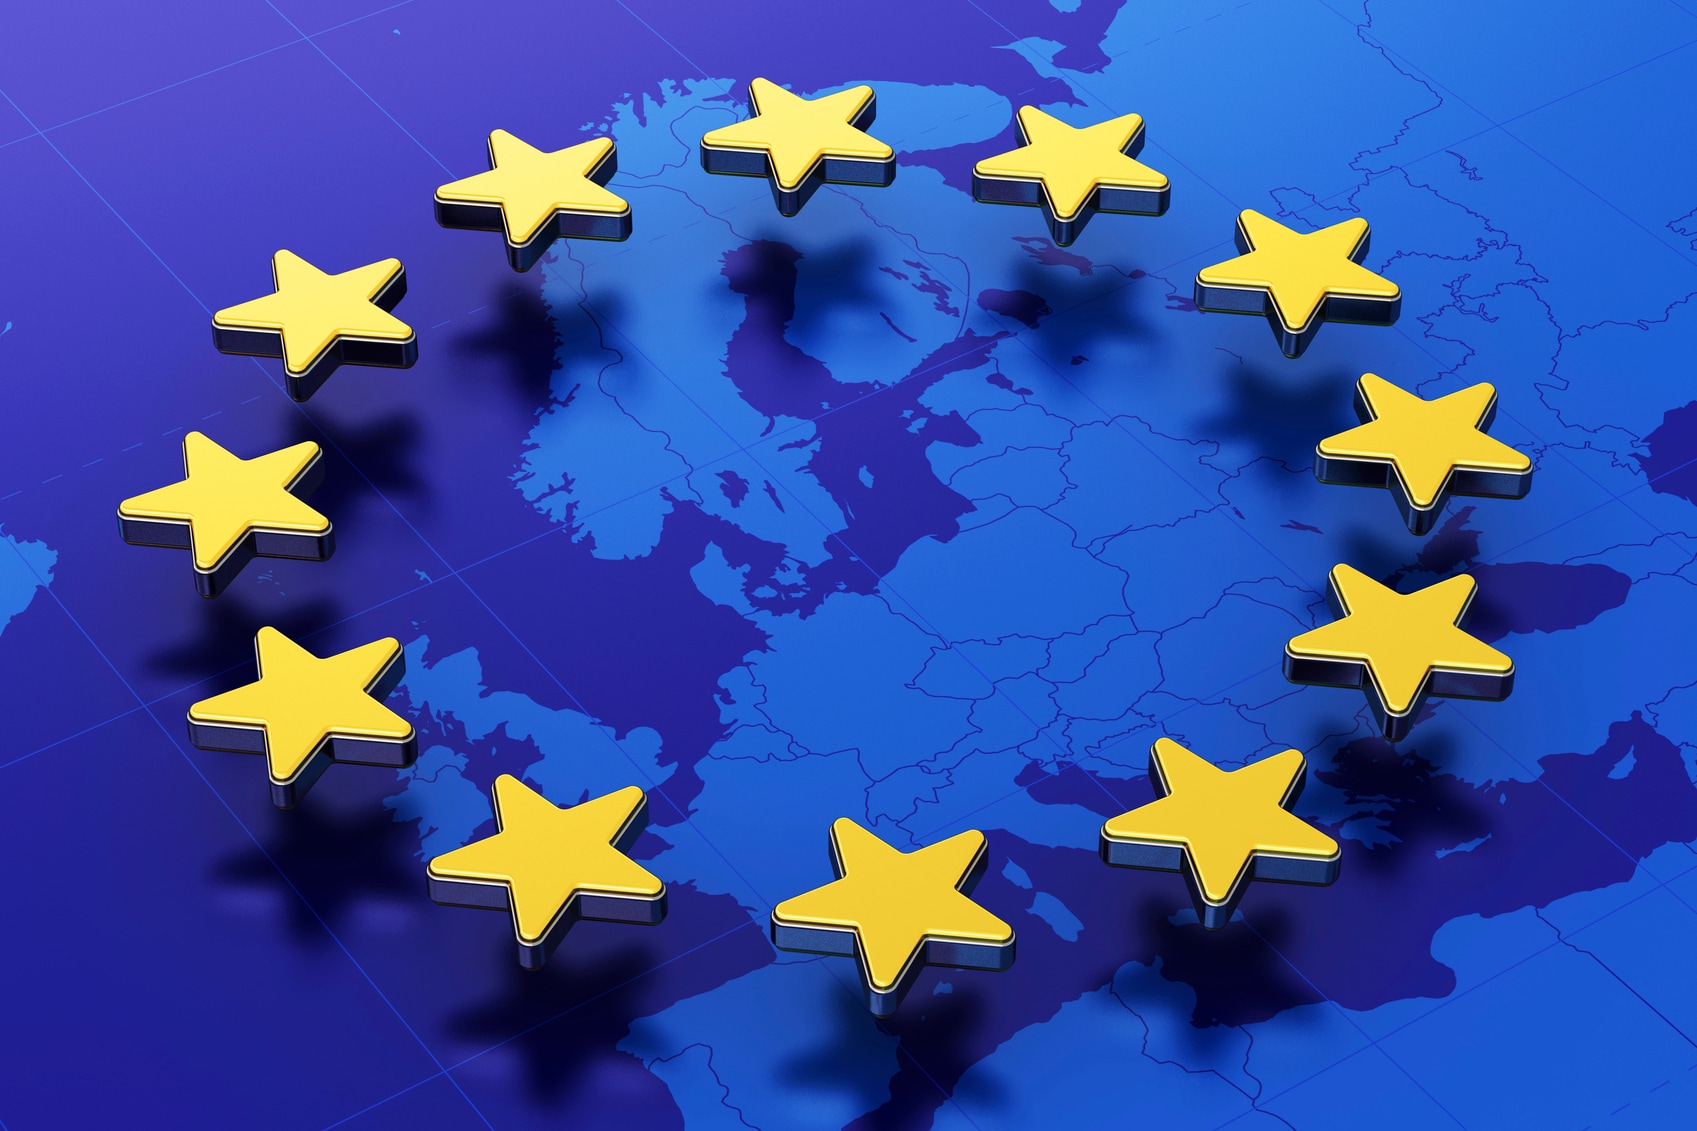 Europa, futuro anteriore: intervista a Carmine Pacente del Comitato Europeo delle Regioni a Bruxelles